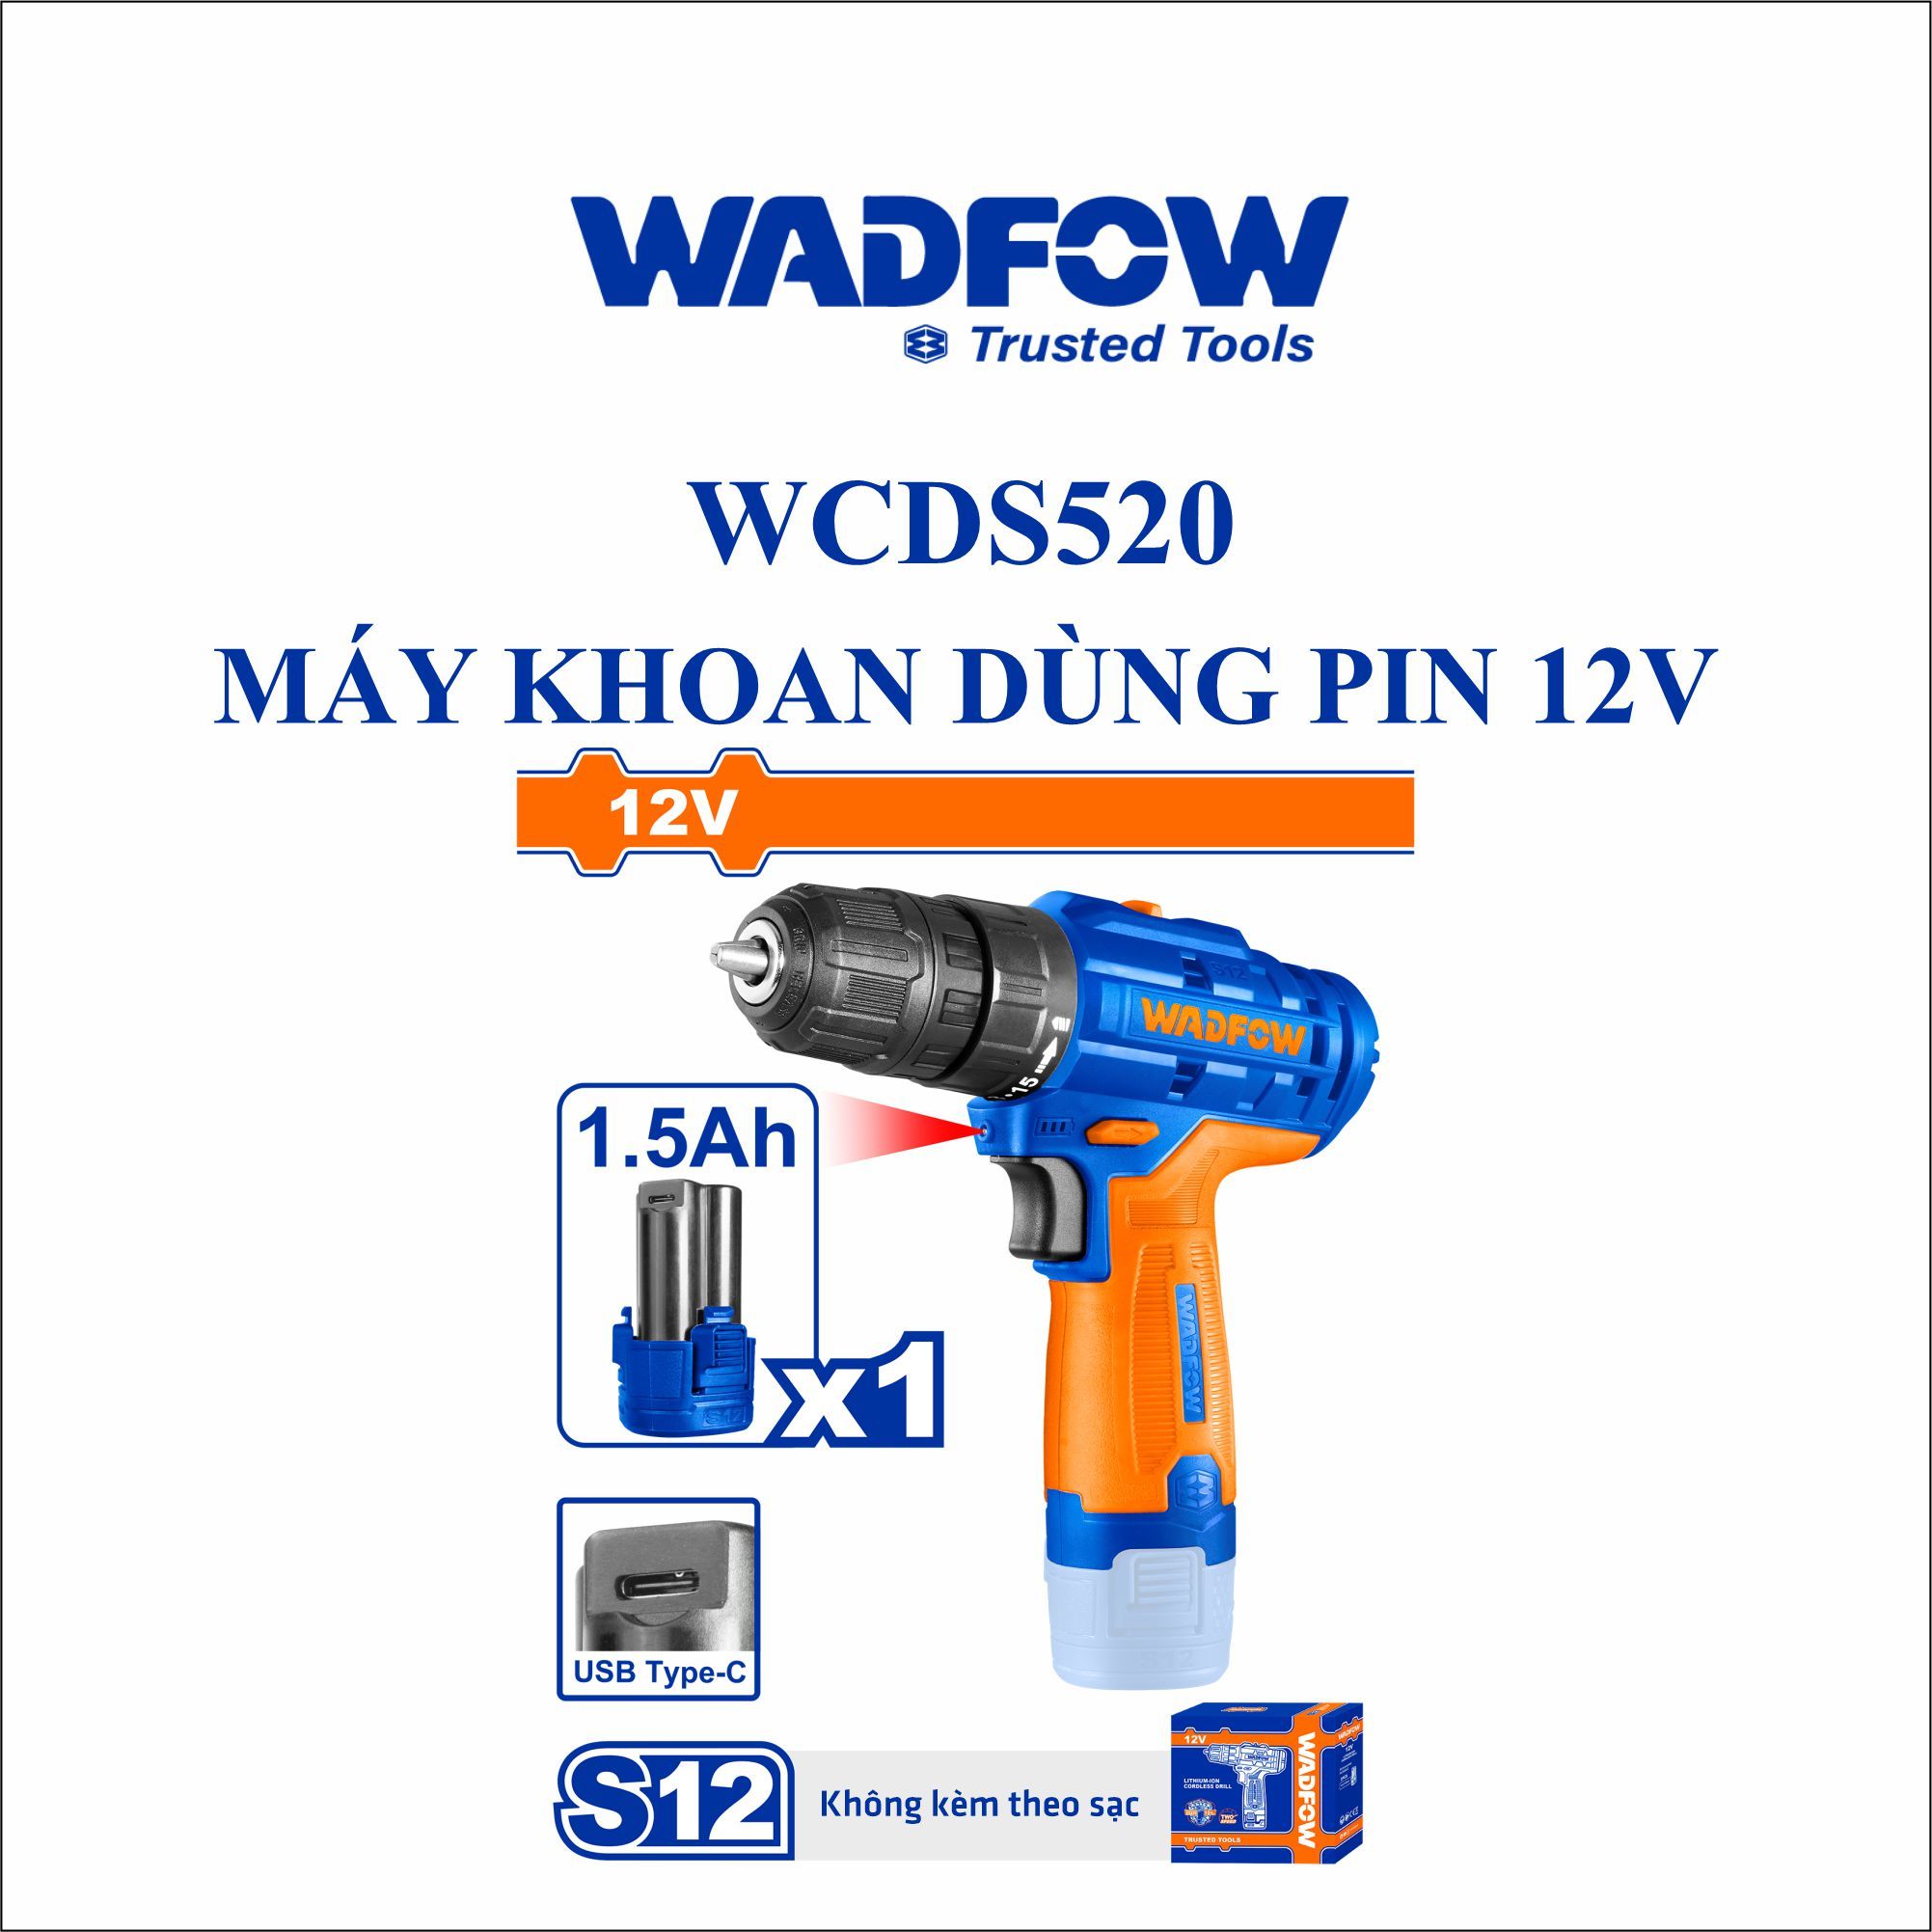  Máy khoan dùng pin 12V WADFOW WCDS520 